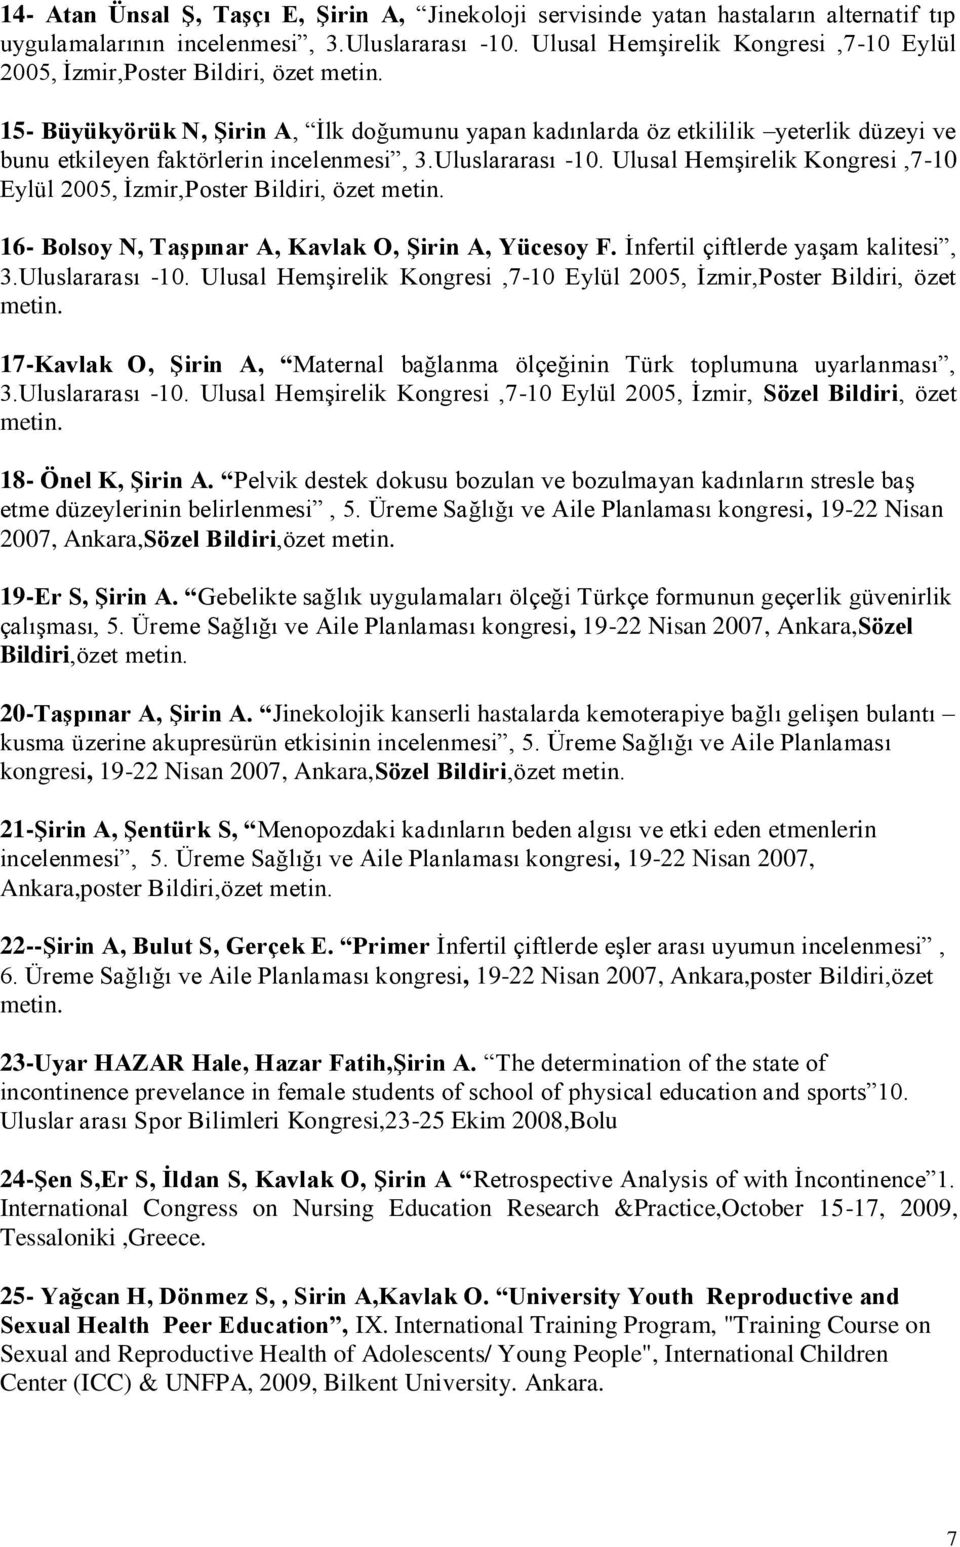 3.Uluslararası -10. Ulusal Hemşirelik Kongresi,7-10 Eylül 2005, İzmir,Poster Bildiri, özet 16- Bolsoy N, Taşpınar A, Kavlak O, Şirin A, Yücesoy F. İnfertil çiftlerde yaşam kalitesi, 3.